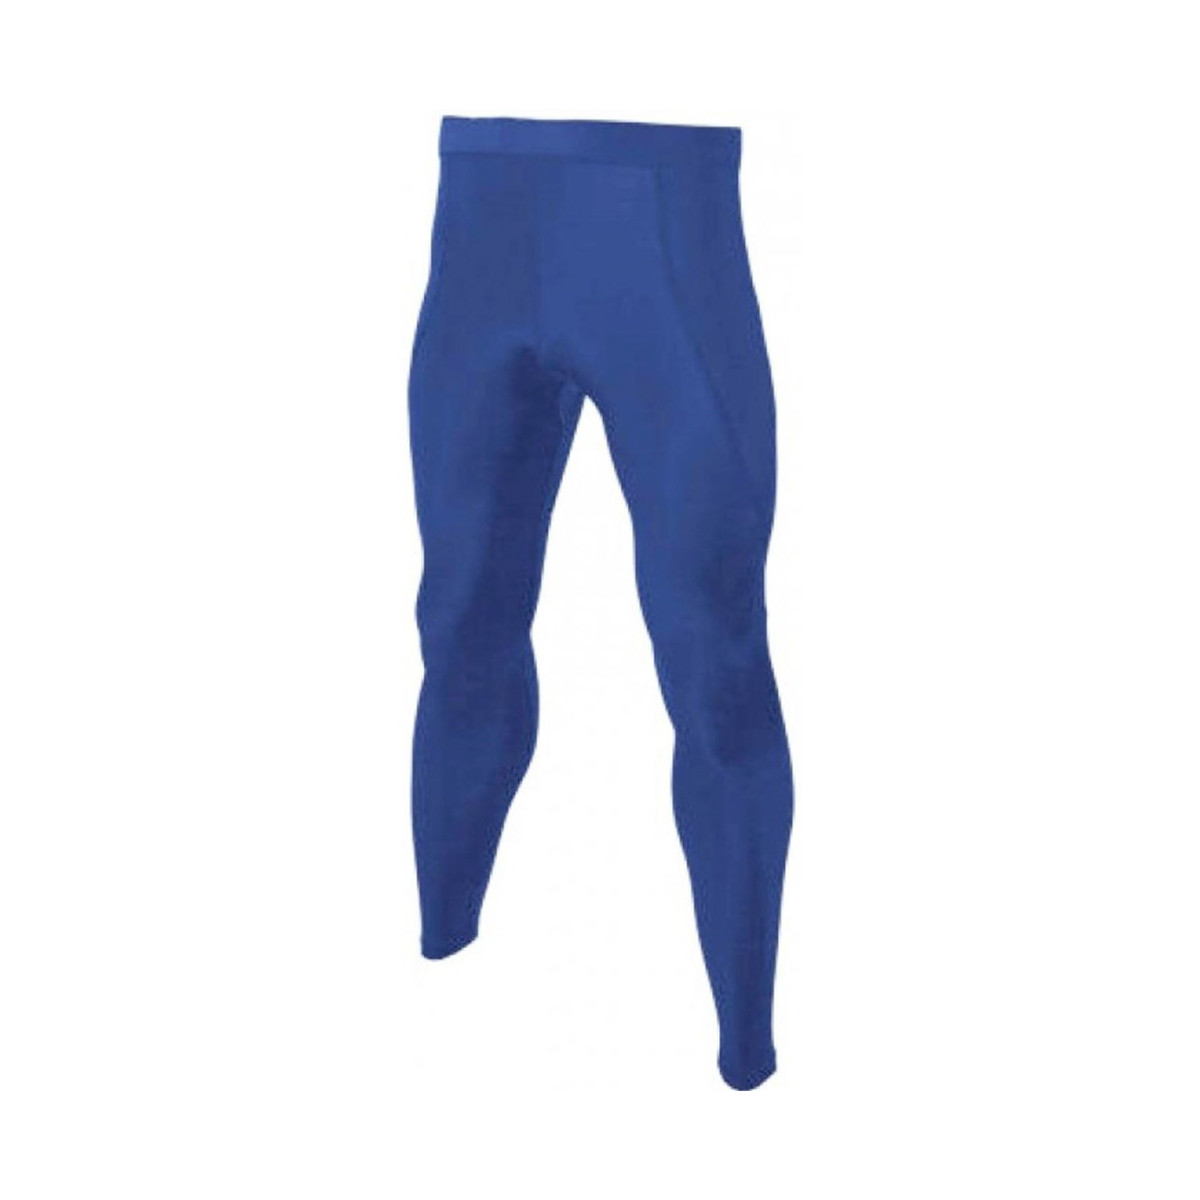 Vêtements Pantalons Carta Sport CS310 Bleu